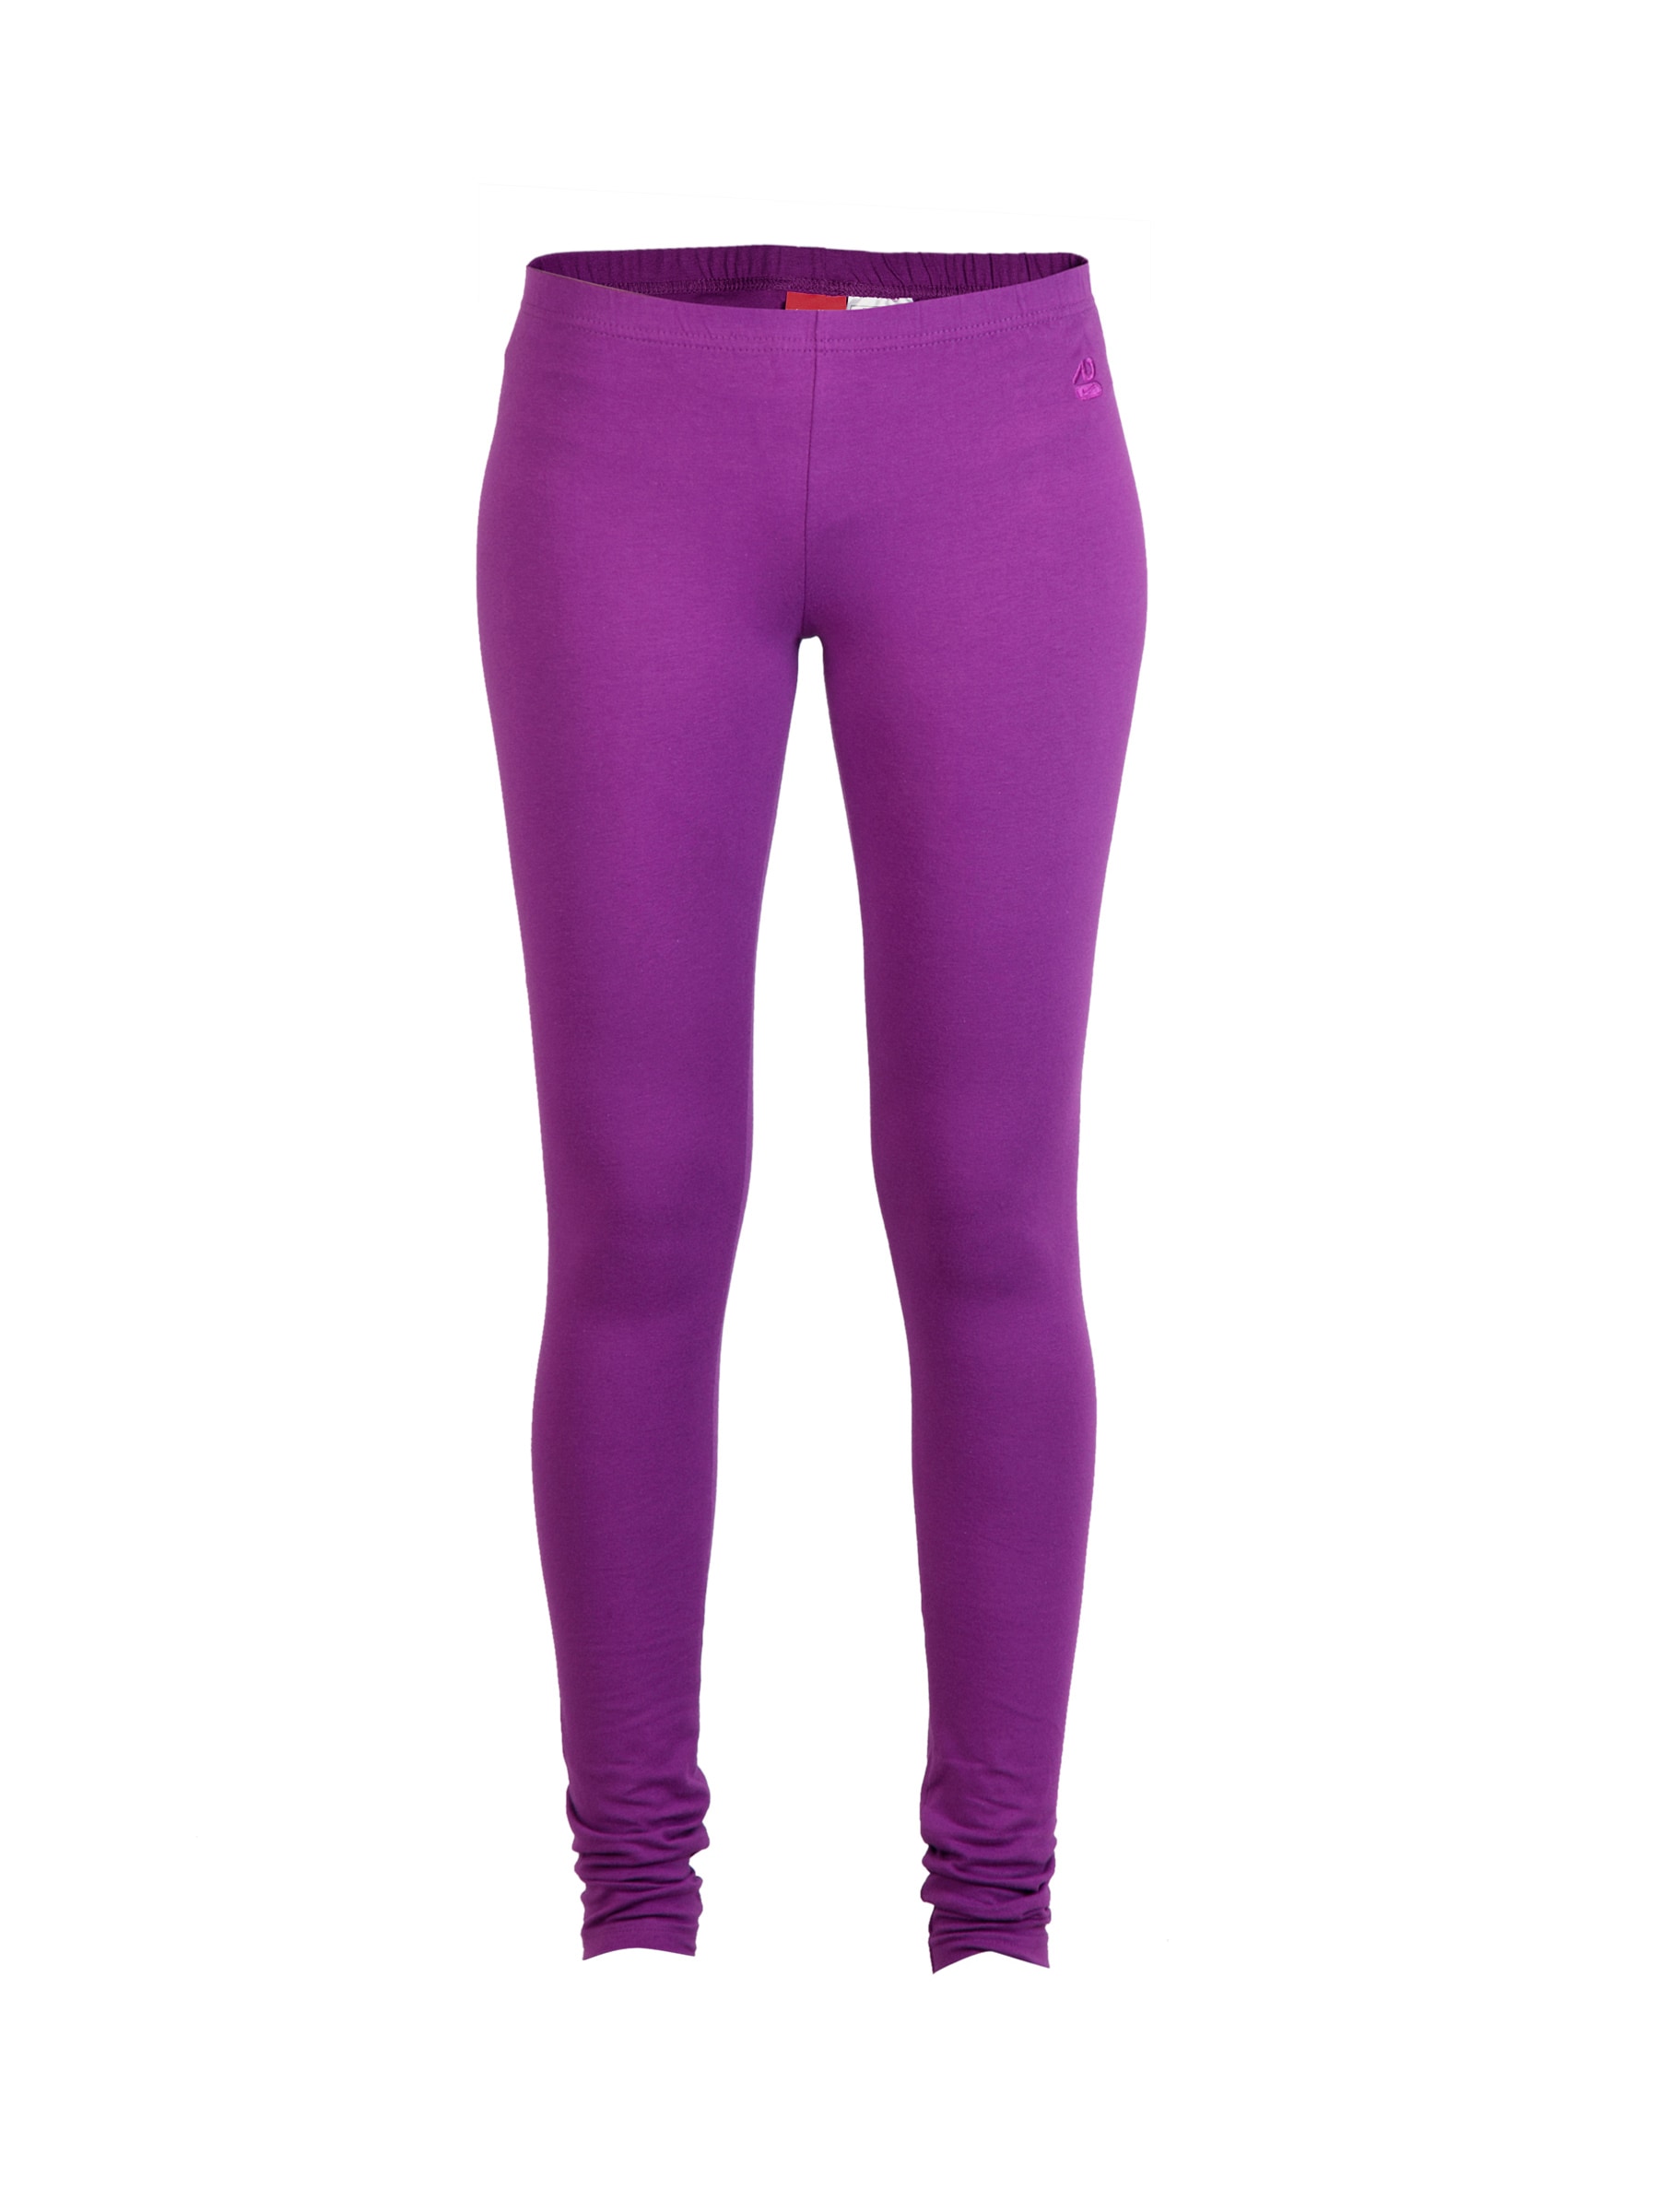 Nike Women Long Purple Leggings